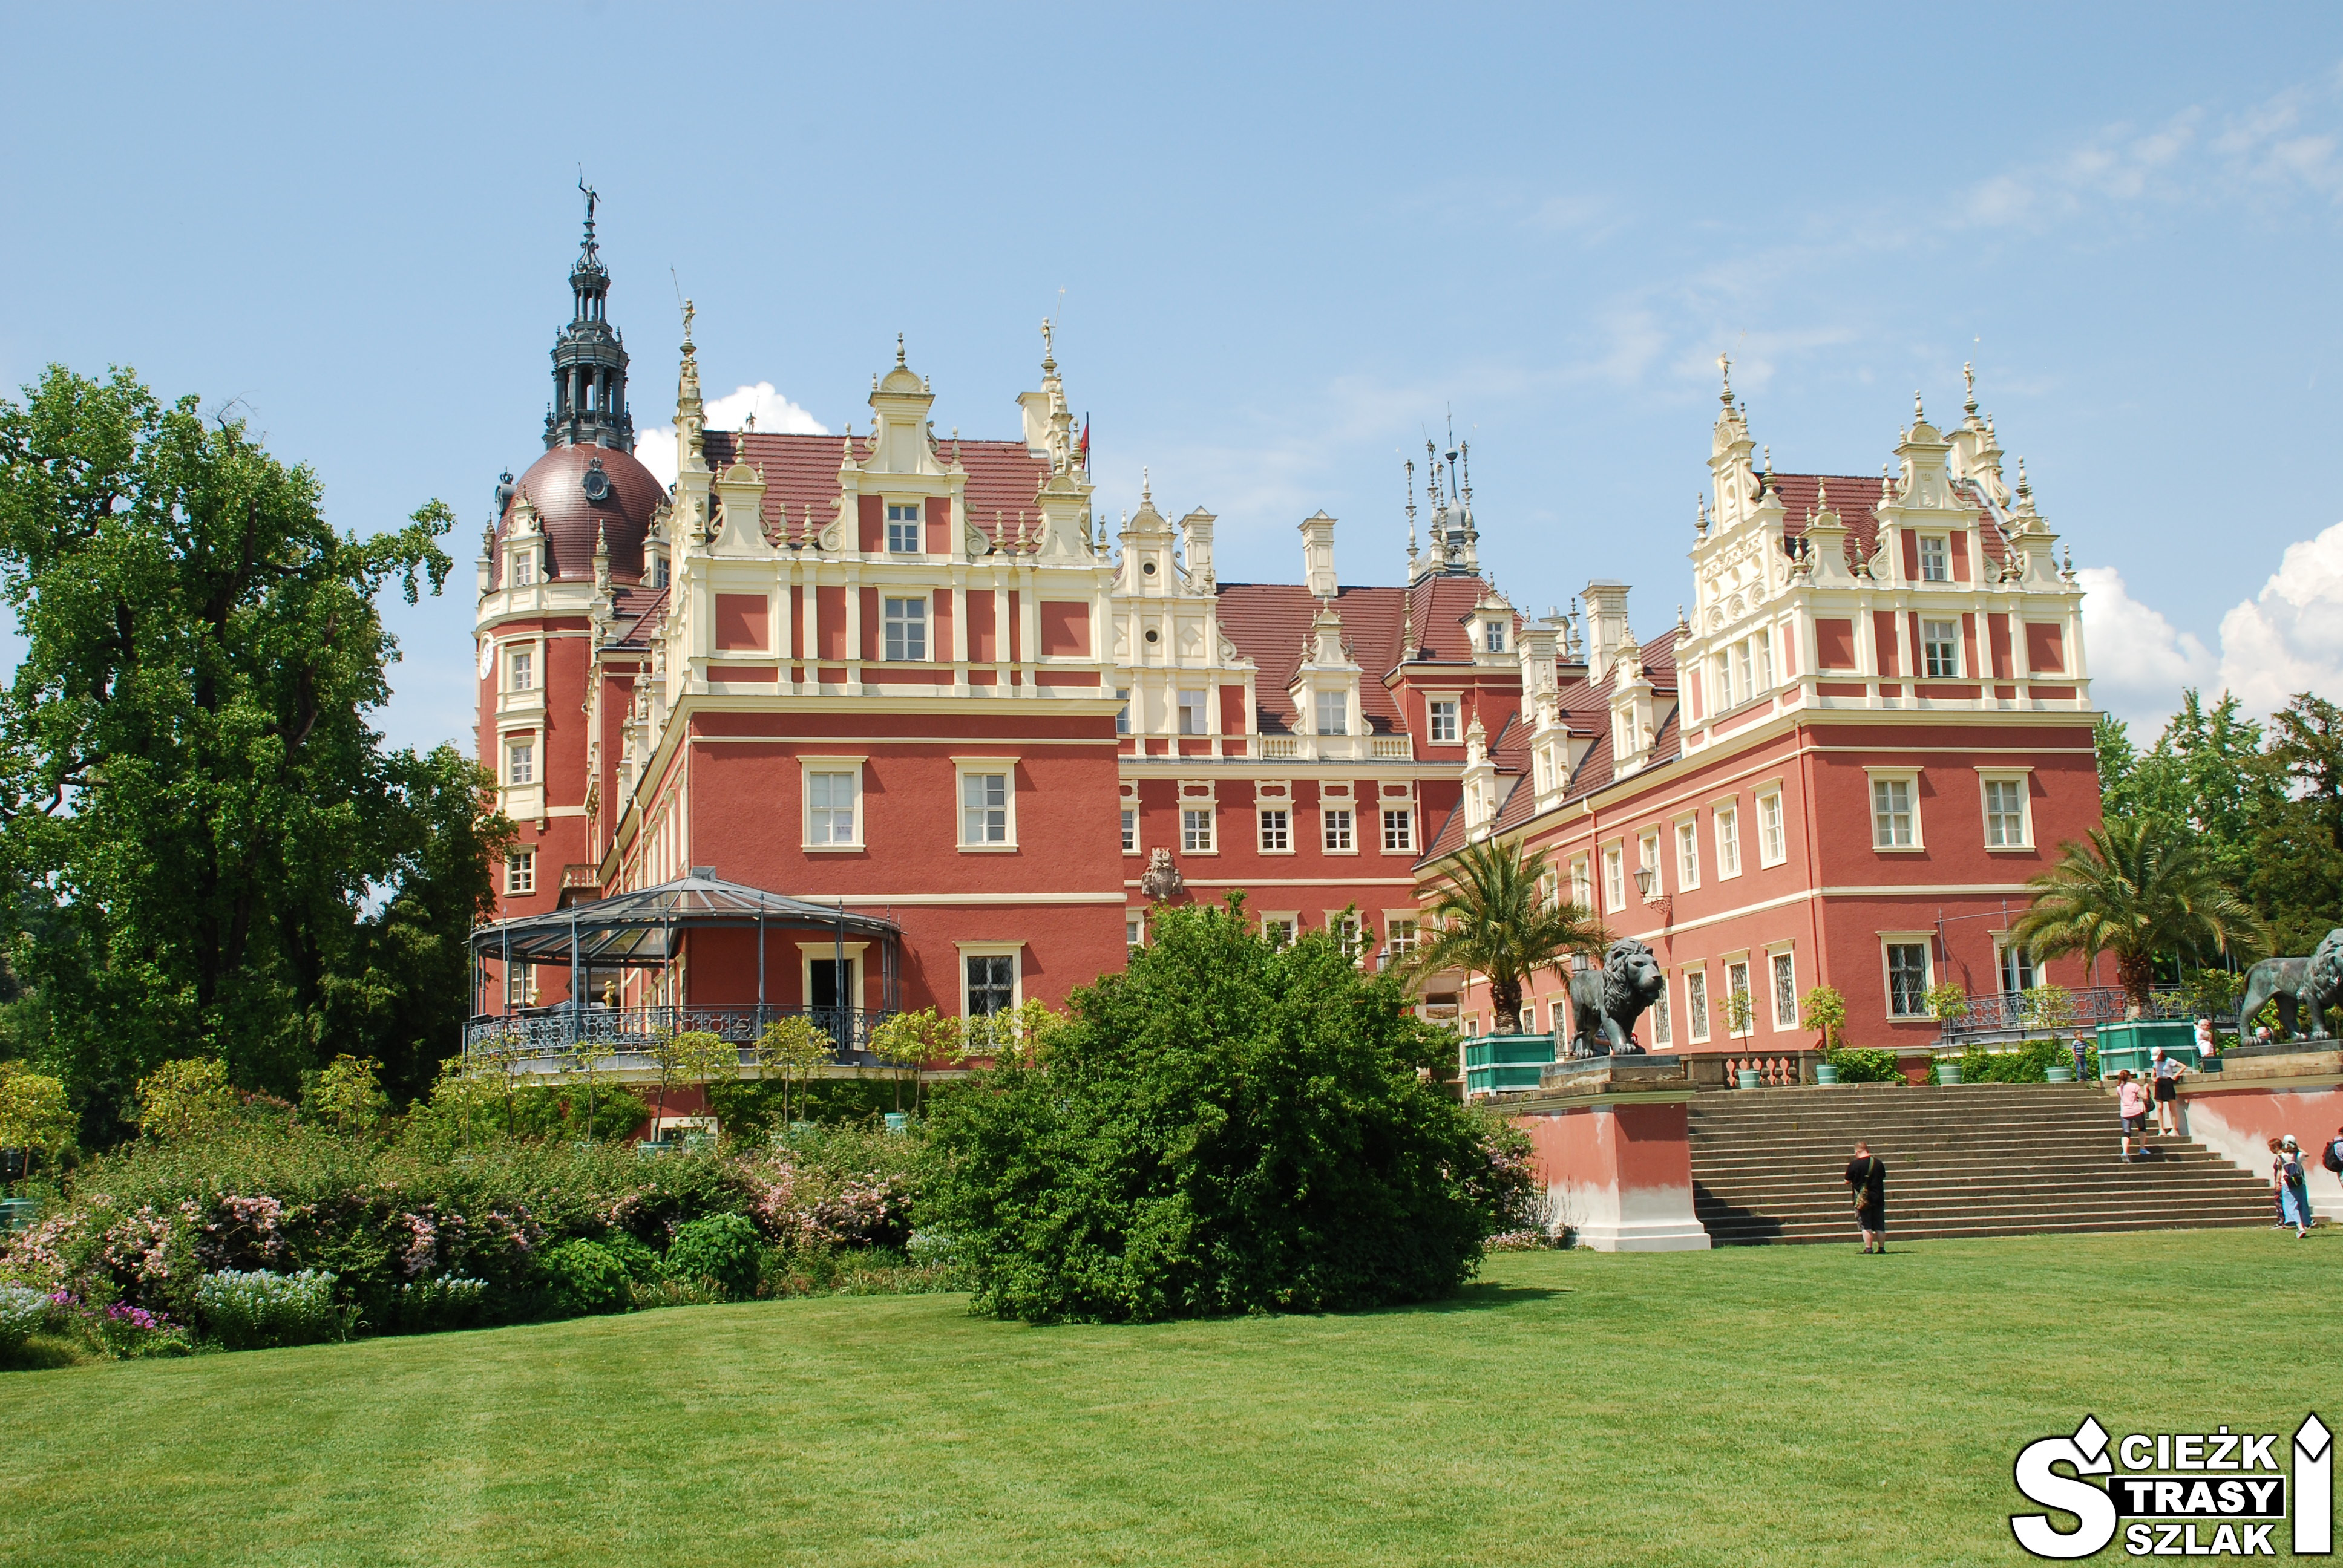 Zamek z wieżami i czerwoną fasadą z wysokimi schodami do zabytkowej budowli wśród drzew i kwitnących krzewów Parku Mużakowskiego